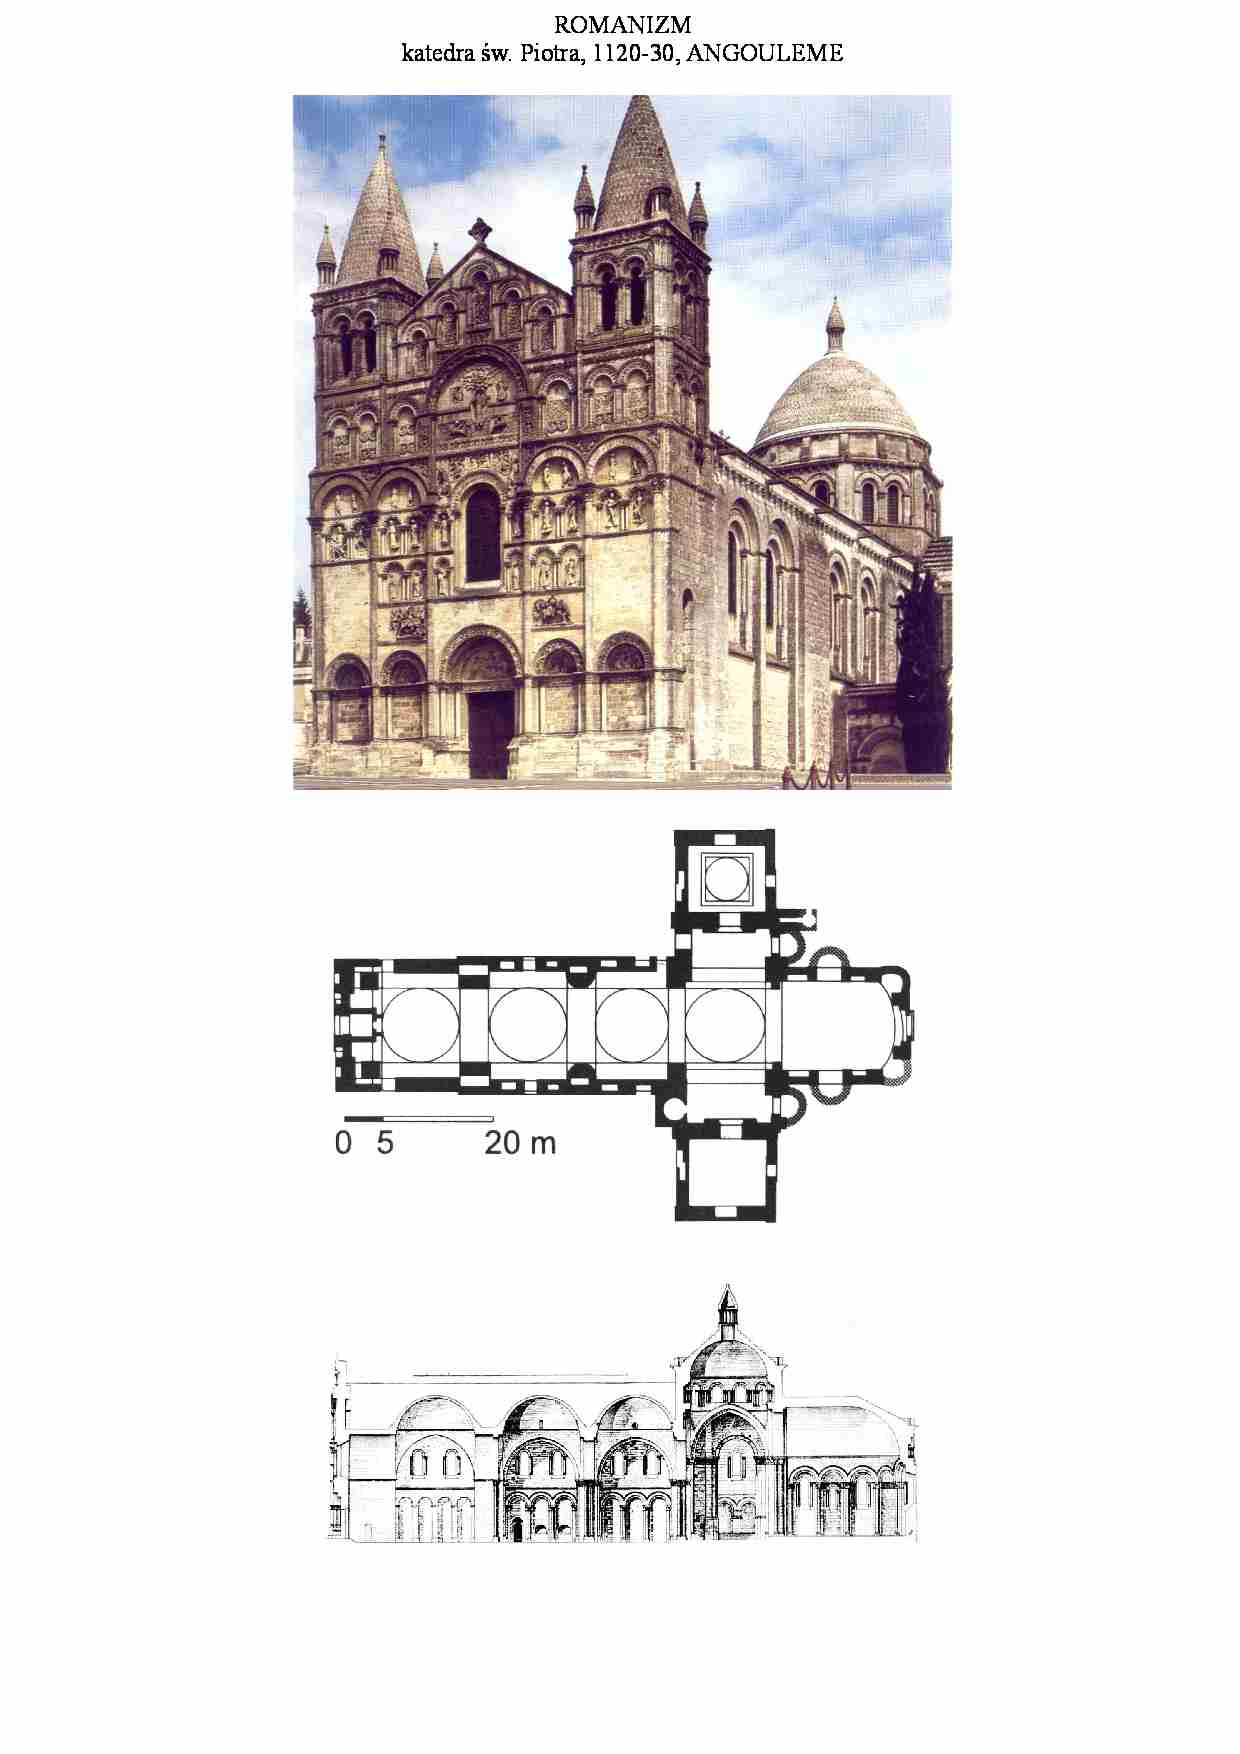 Katedra św. Piotra, Angouleme - strona 1